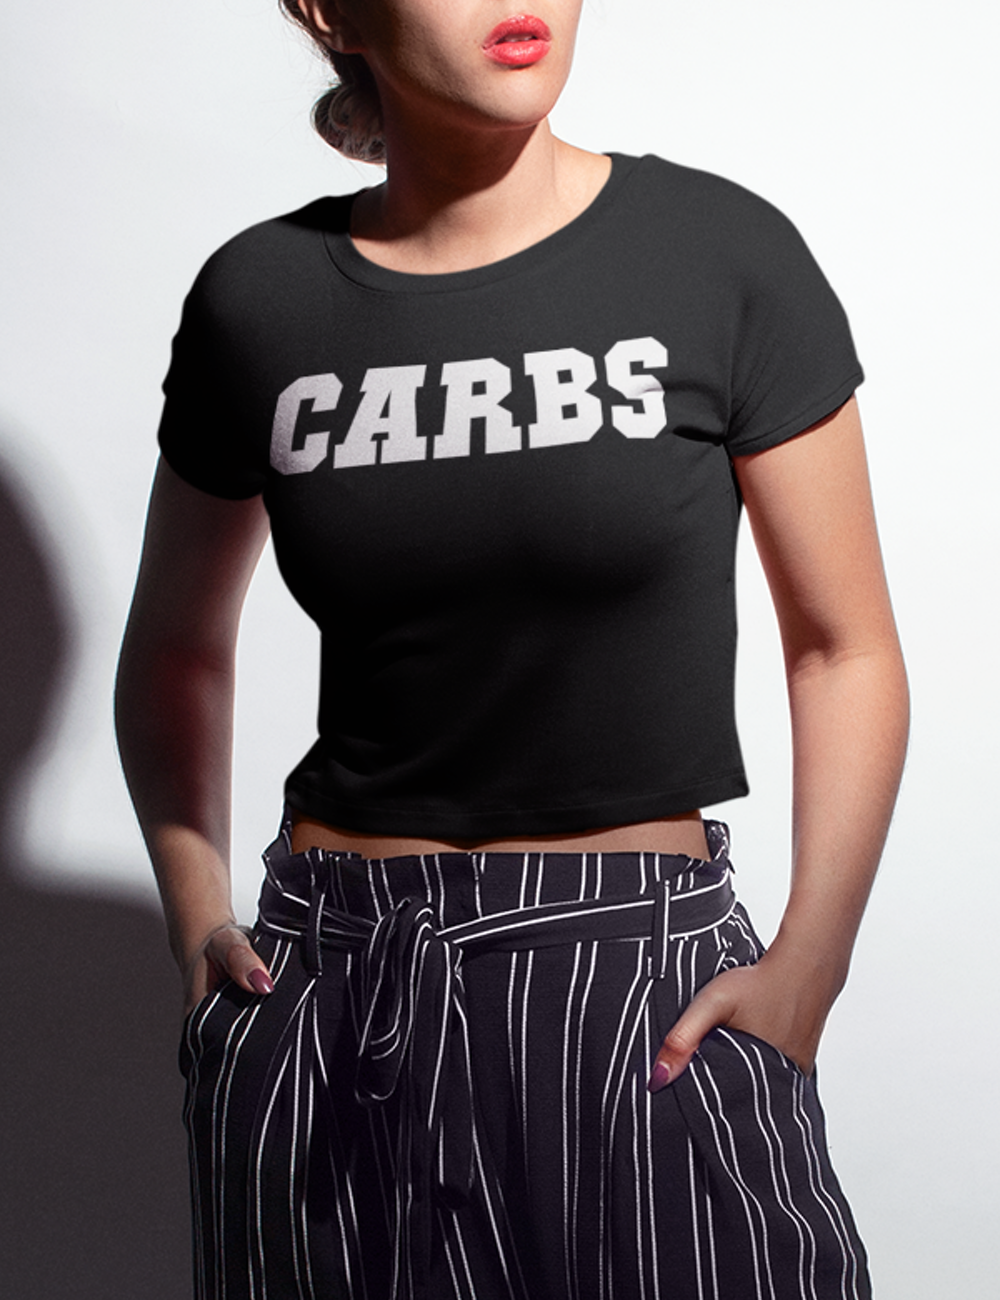 Carbs (White Print) Women's Fitted Crop Top T-Shirt OniTakai